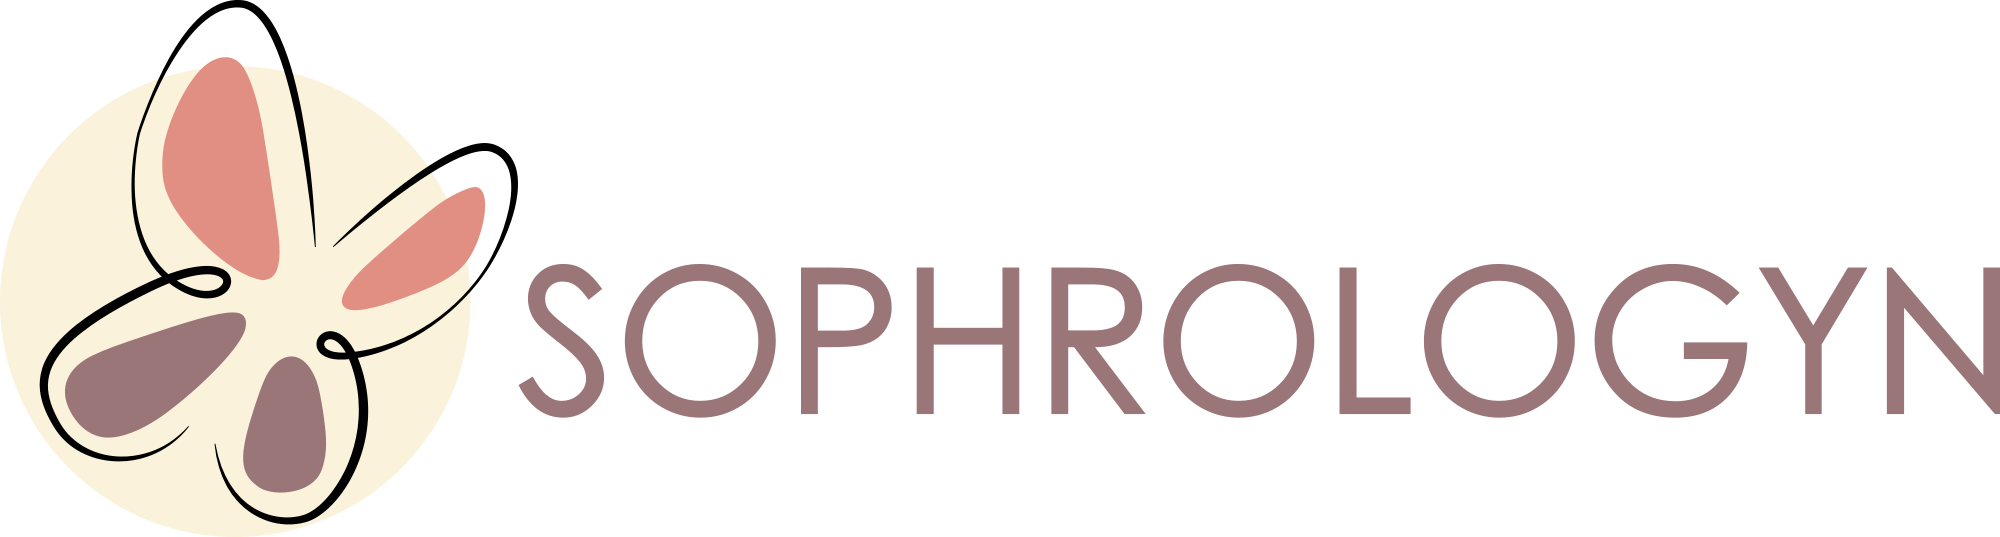 logo sophrologyn